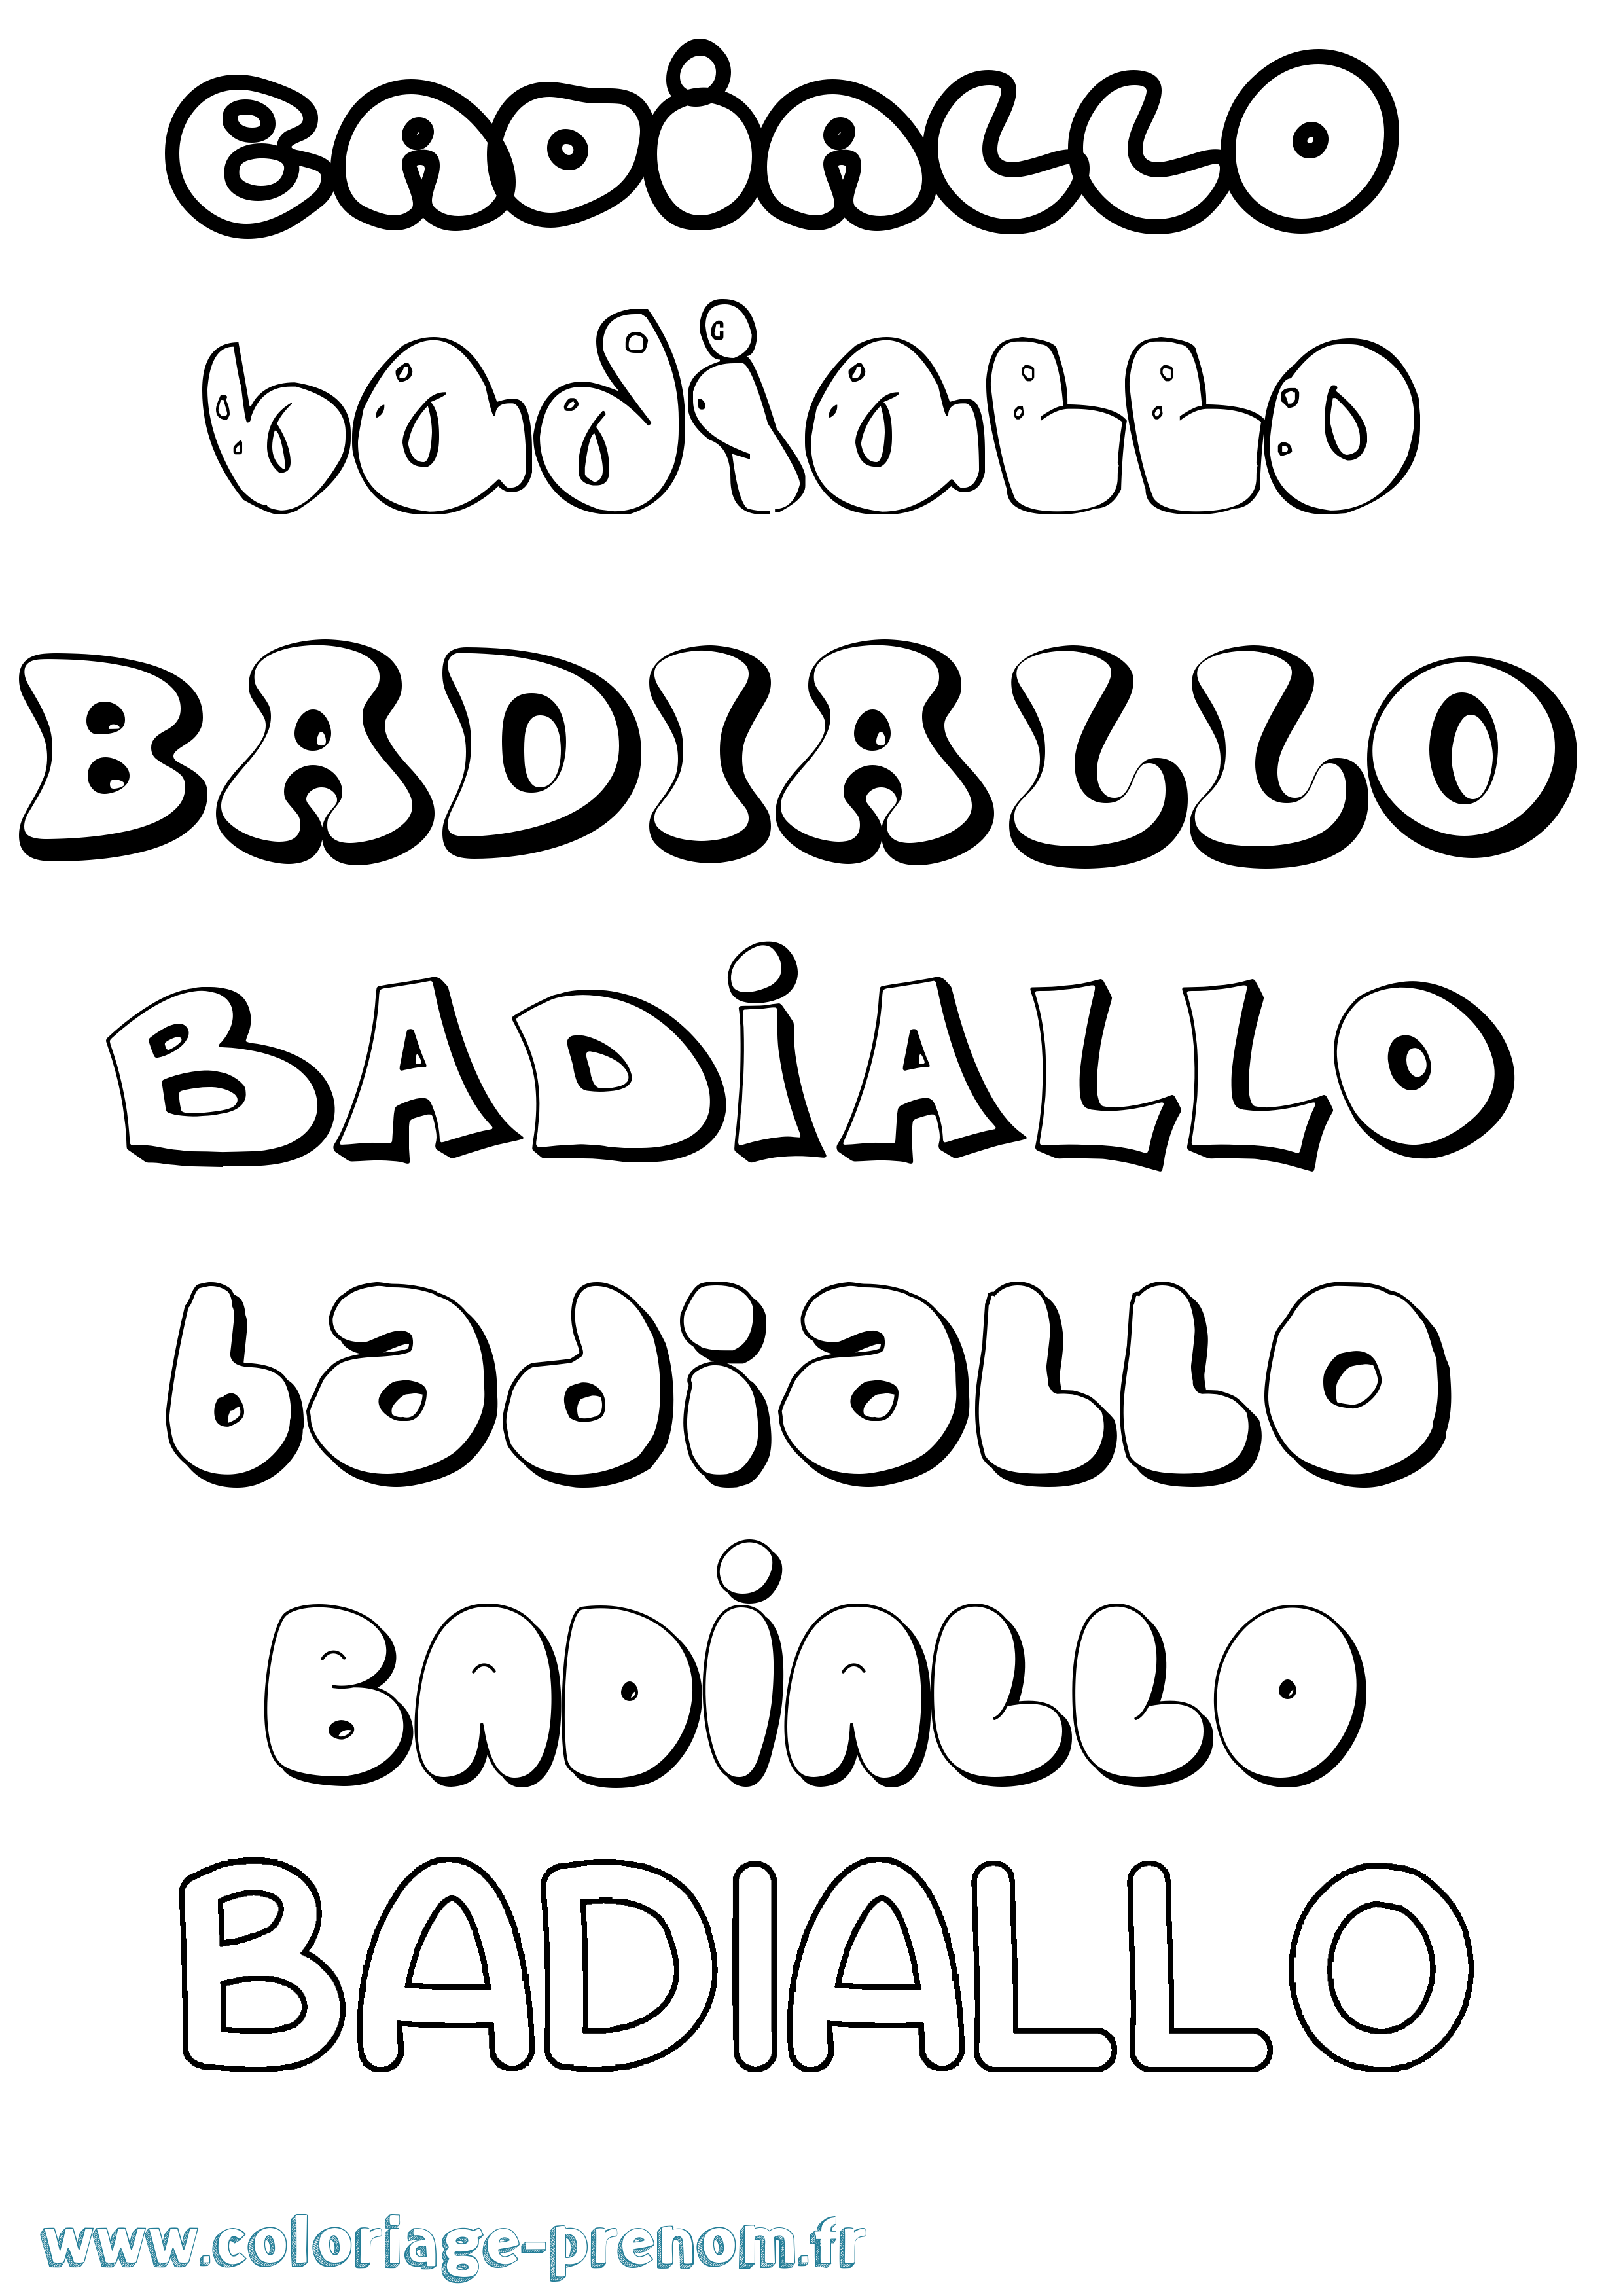 Coloriage prénom Badiallo Bubble